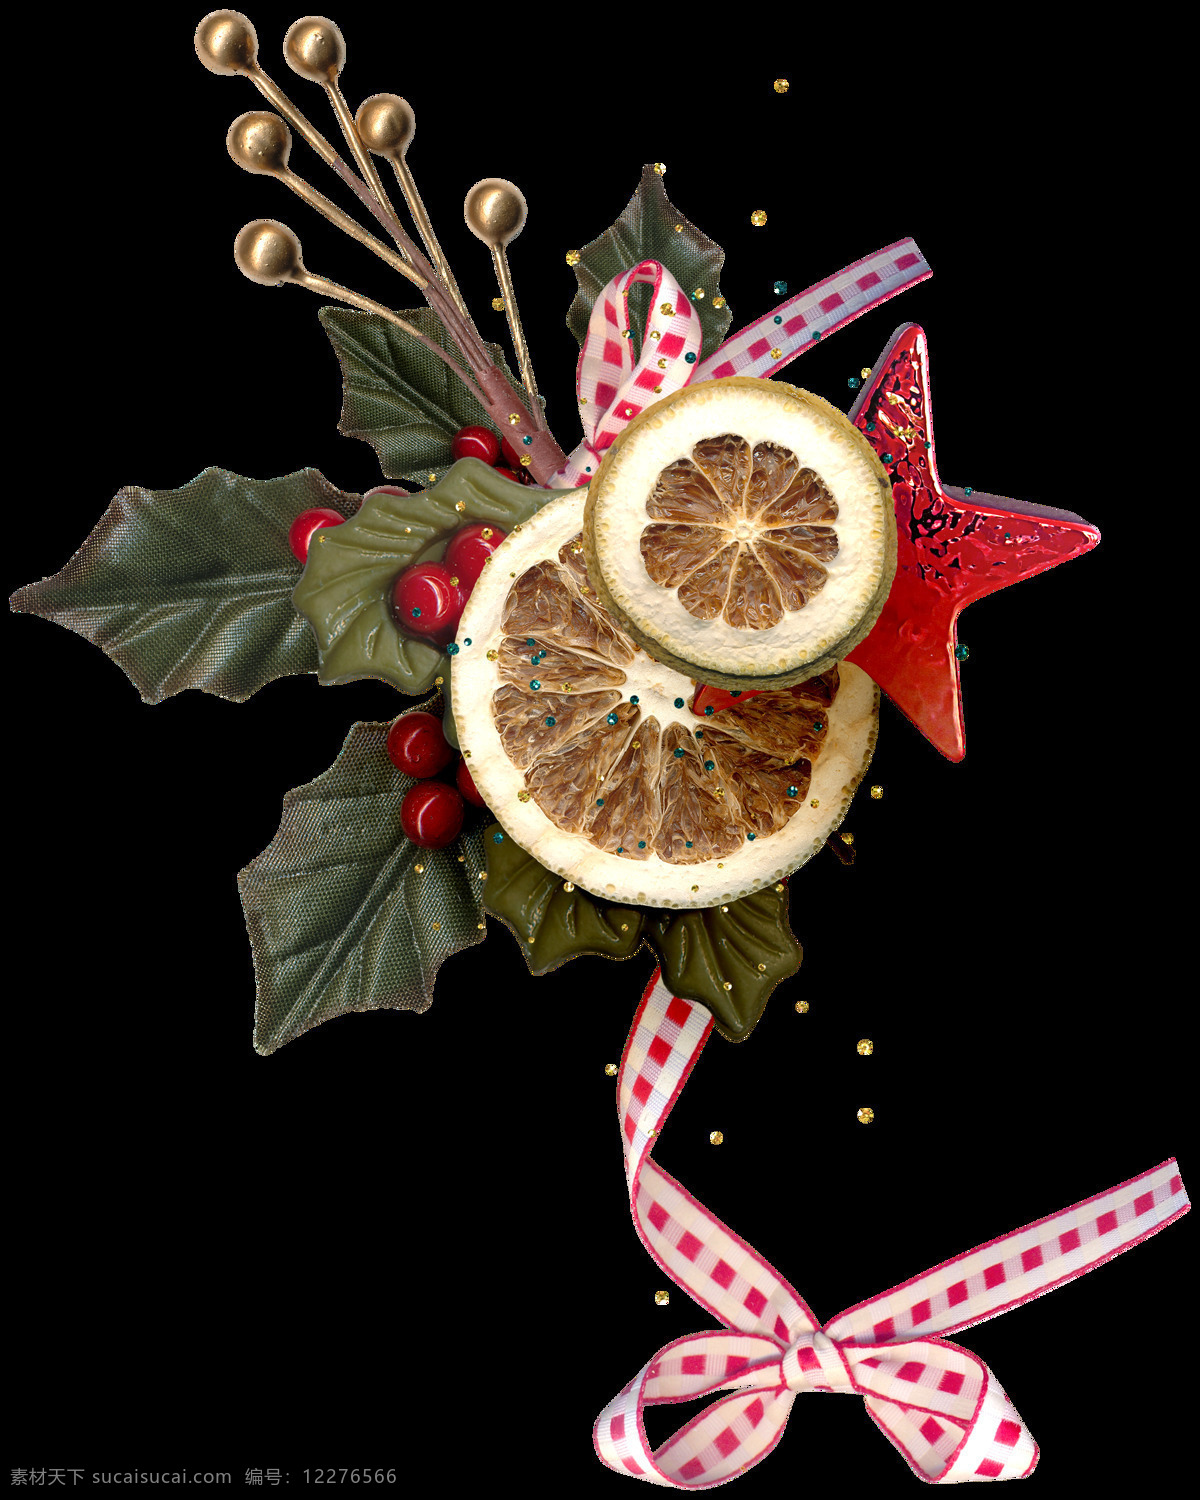 圣诞 果 柠檬 装饰 元素 christmas merry 蝴蝶结 卡通元素 柠檬片 设计素材 设计元素 圣诞png 圣诞果 圣诞免抠元素 圣诞装扮 丝带 装饰图案